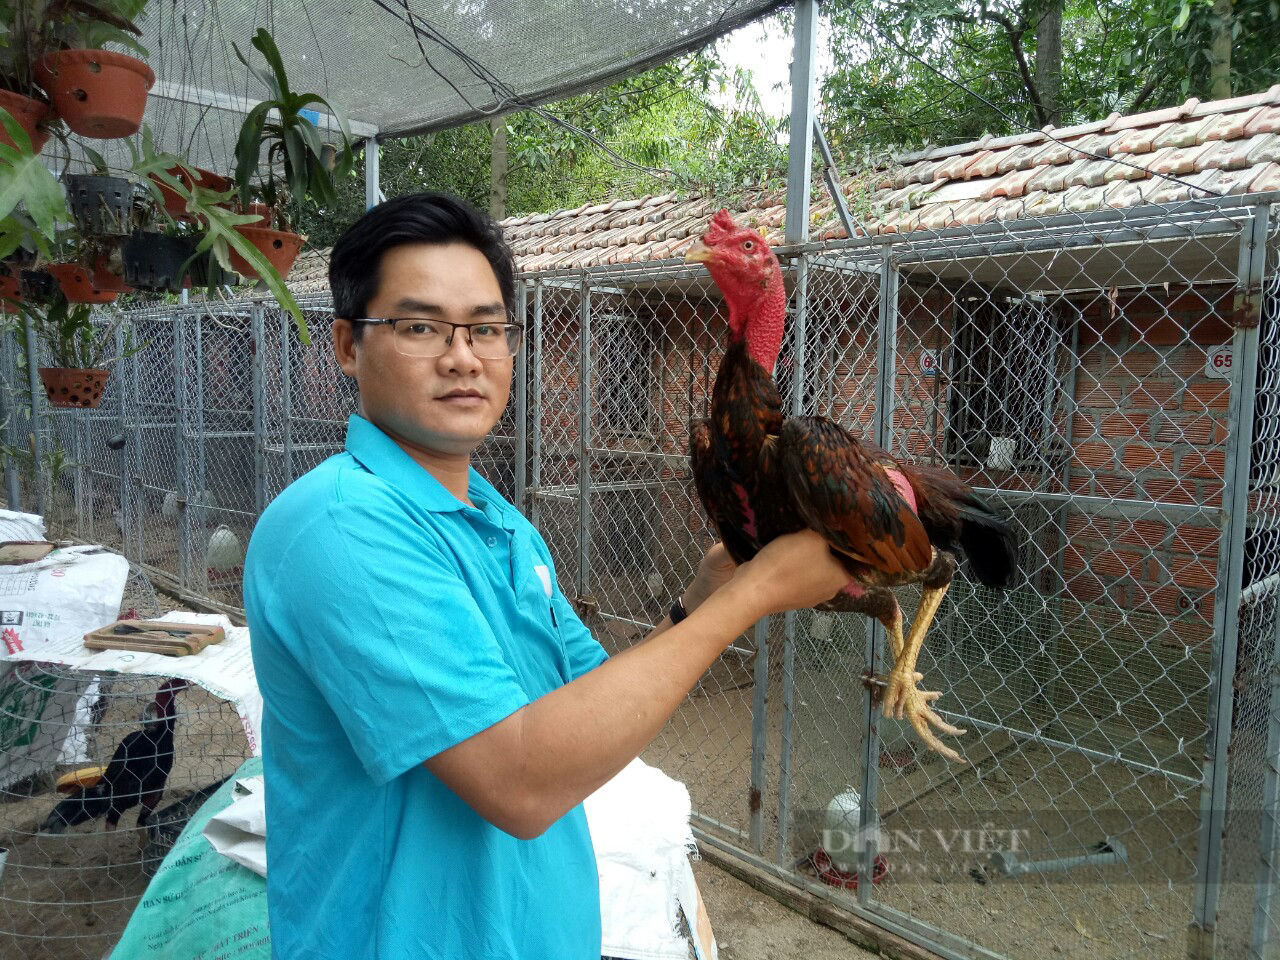 Nuôi gà nòi Tây Sơn, cho gà ăn toàn đồ sang chảnh, anh kỹ sư ở Bình Định lãi 1 tỷ/năm - Ảnh 2.